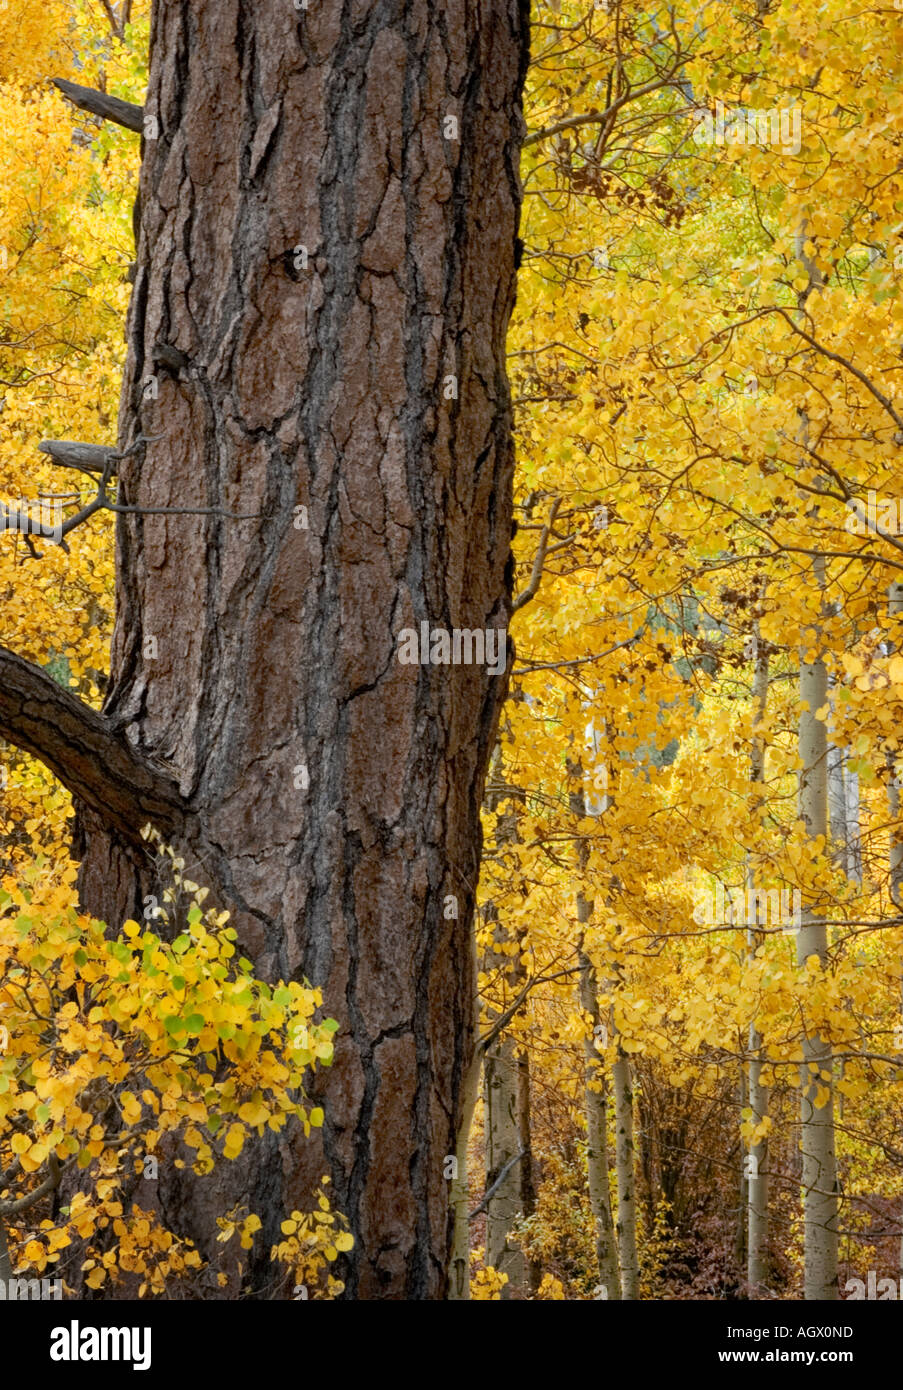 Un arbre est surrrounded avec peupliers jaune au cours de l'automne Banque D'Images